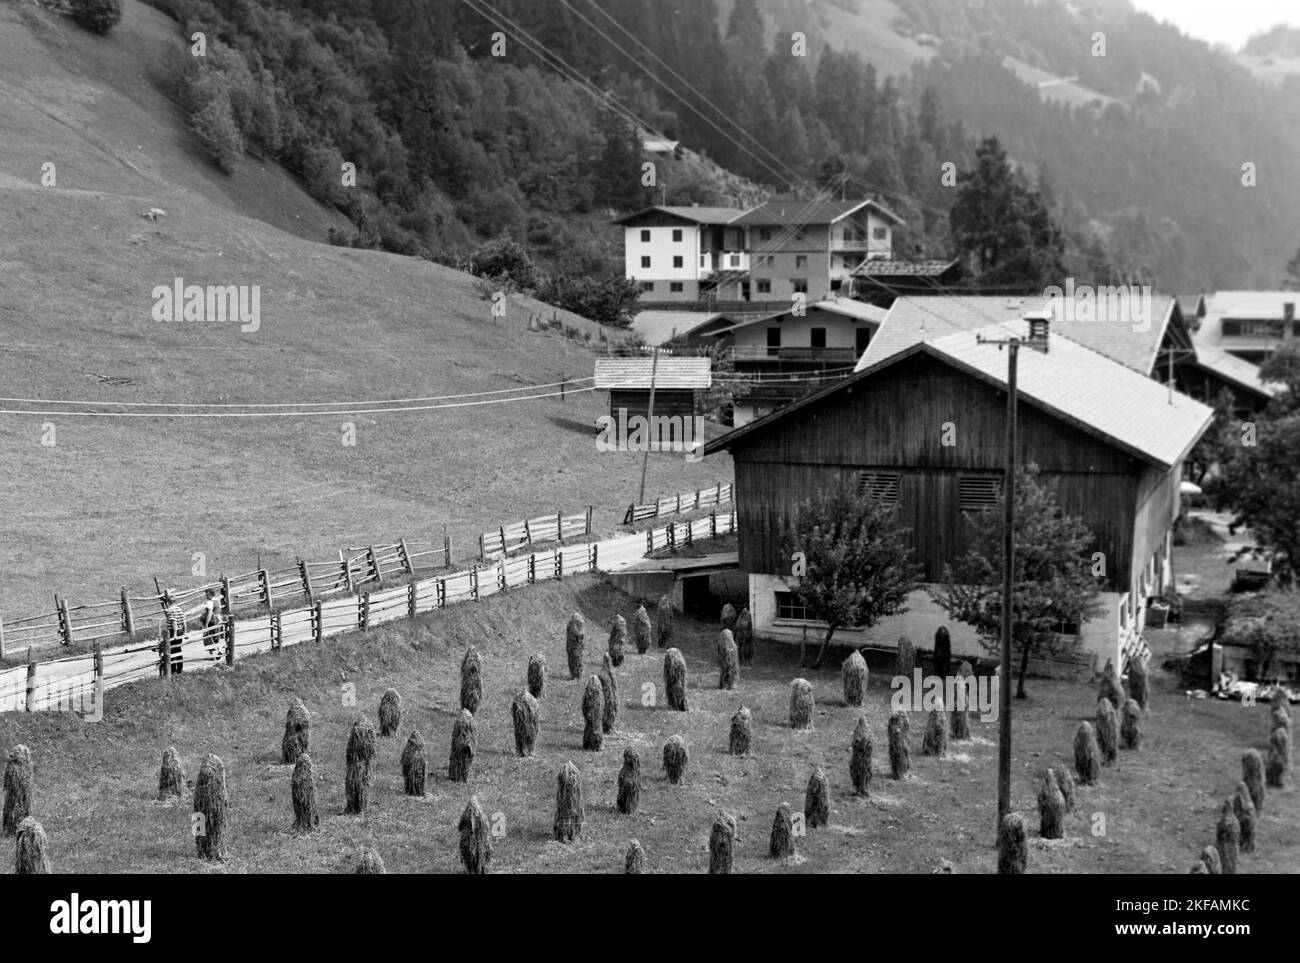 Bauernhof mit Heuhaufen im Zillertal, Tirol, 1970. Farm with haystacks in the Ziller Valley, Tyrol, 1970. Stock Photo